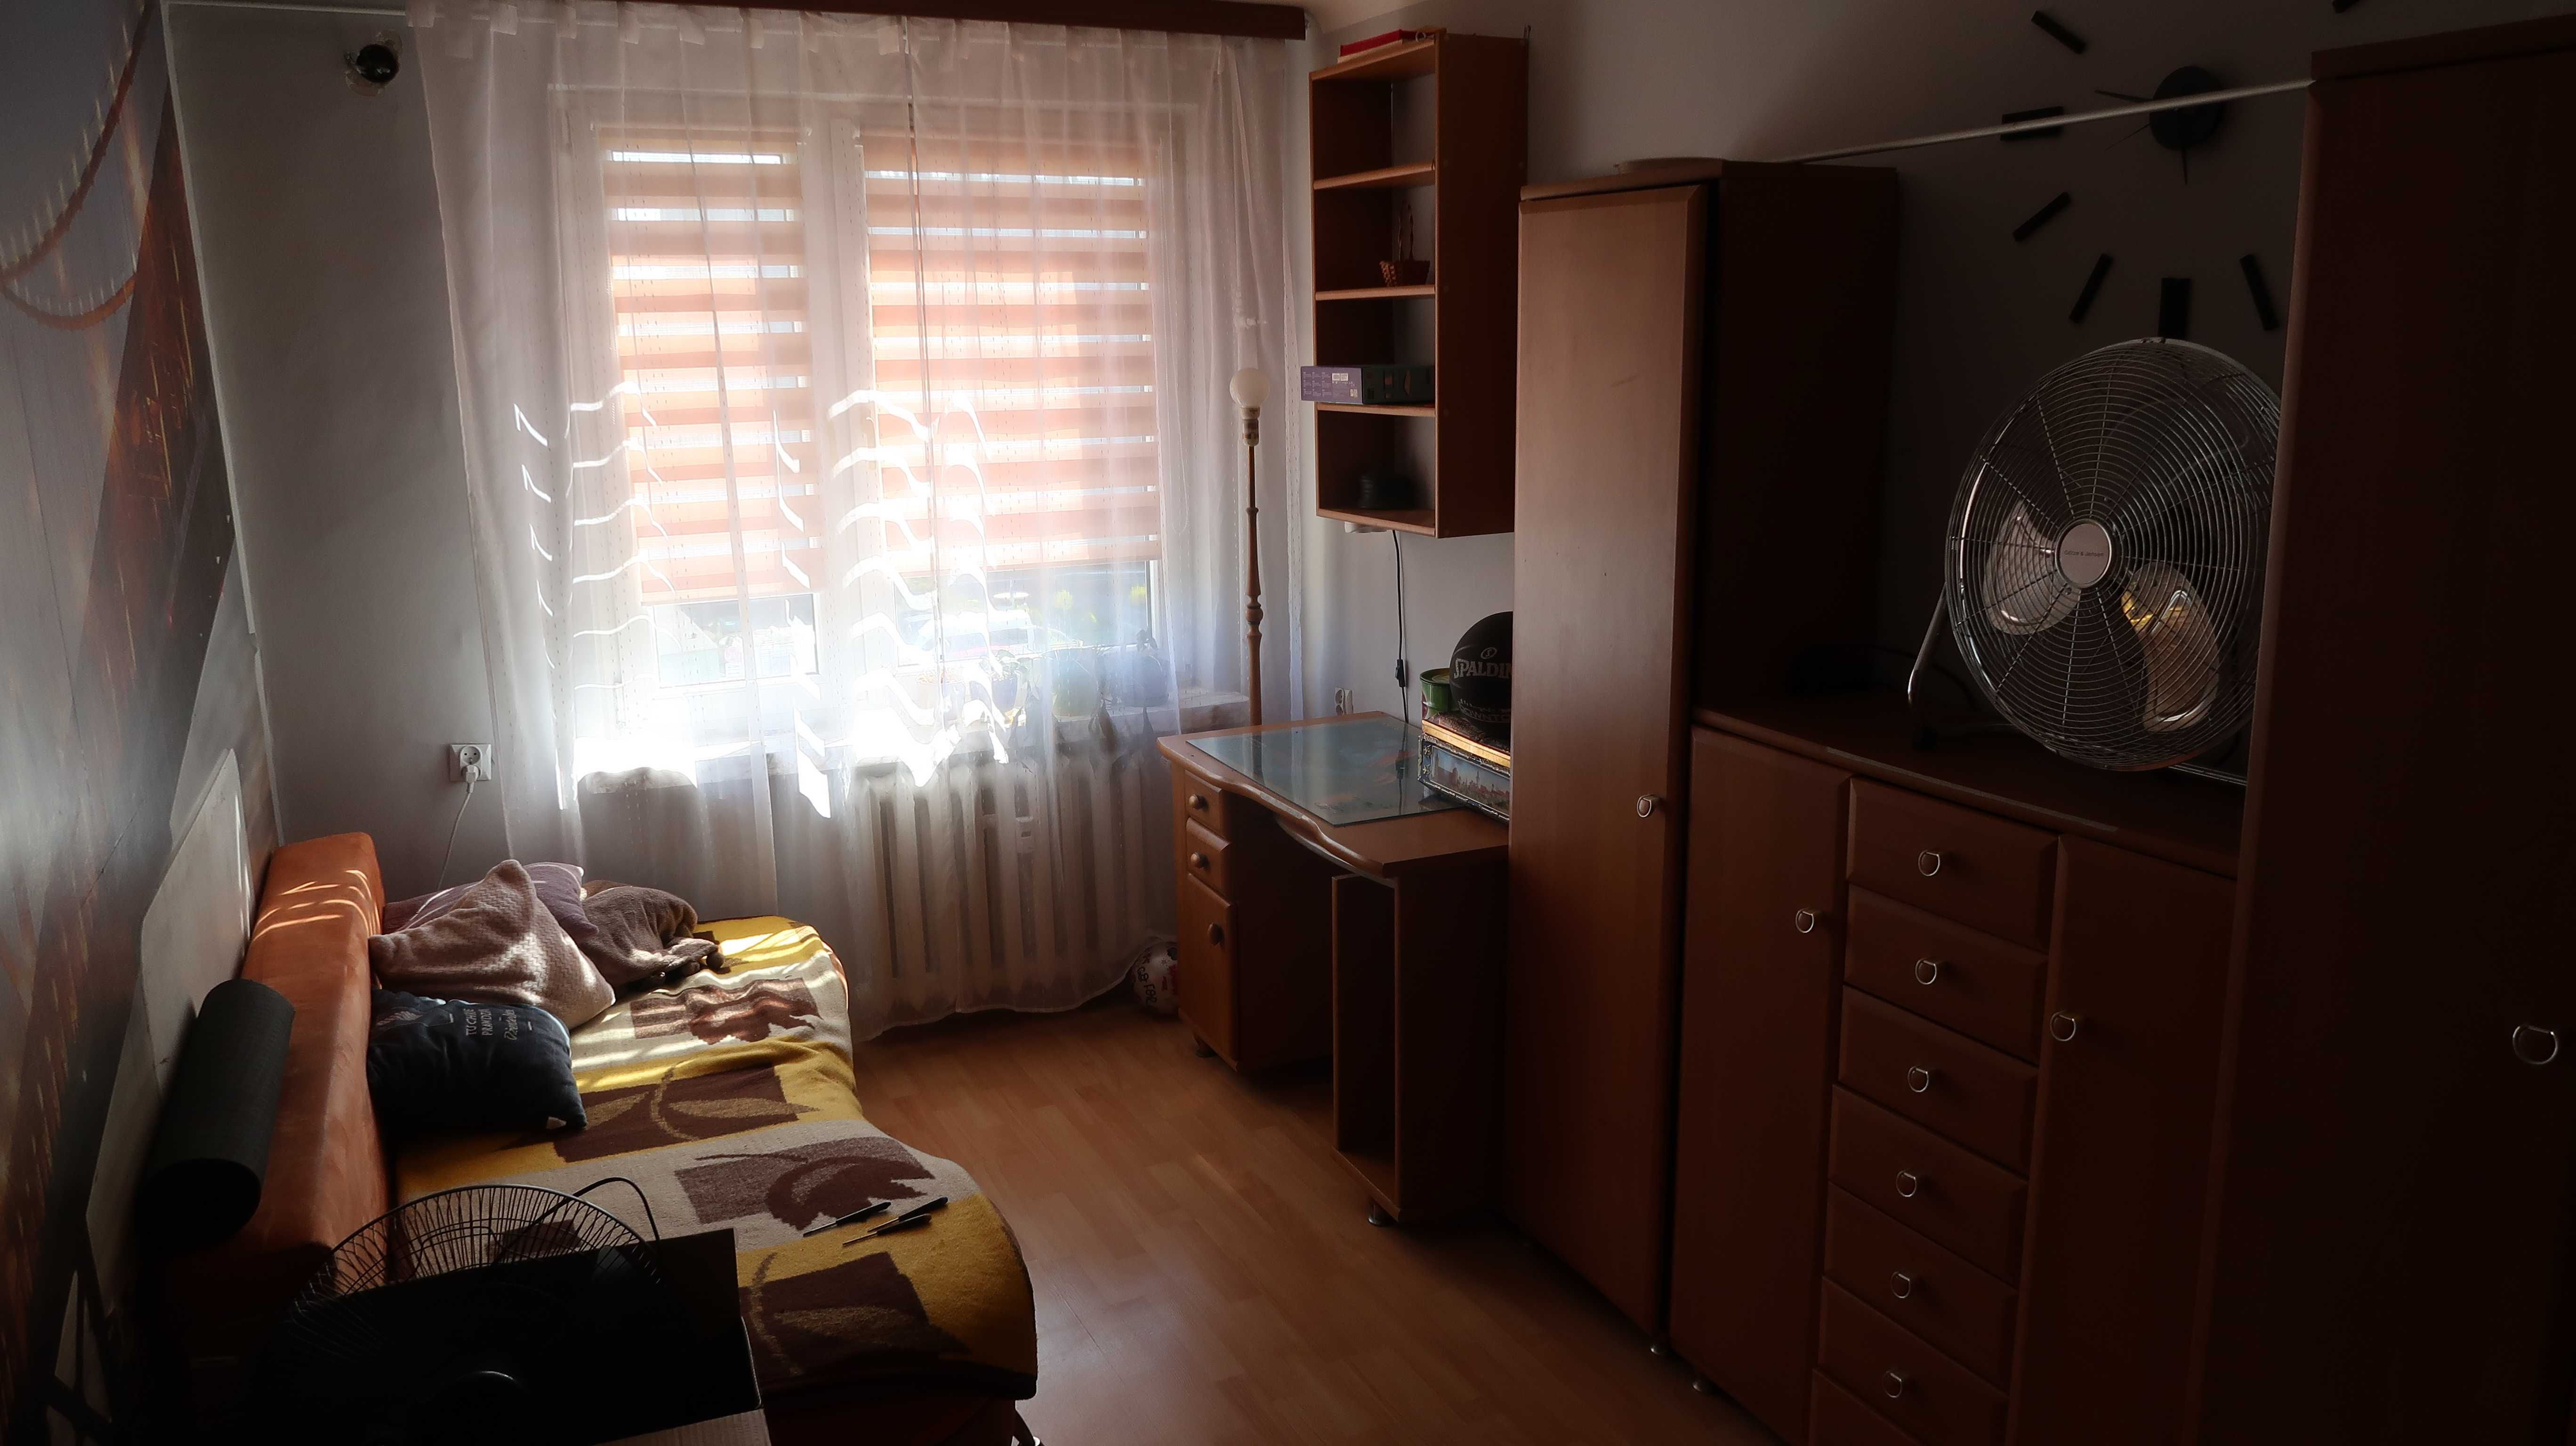 Mieszkanie Sandomierz 3 pokoje 58 metrów Sandomierz • OLX.pl